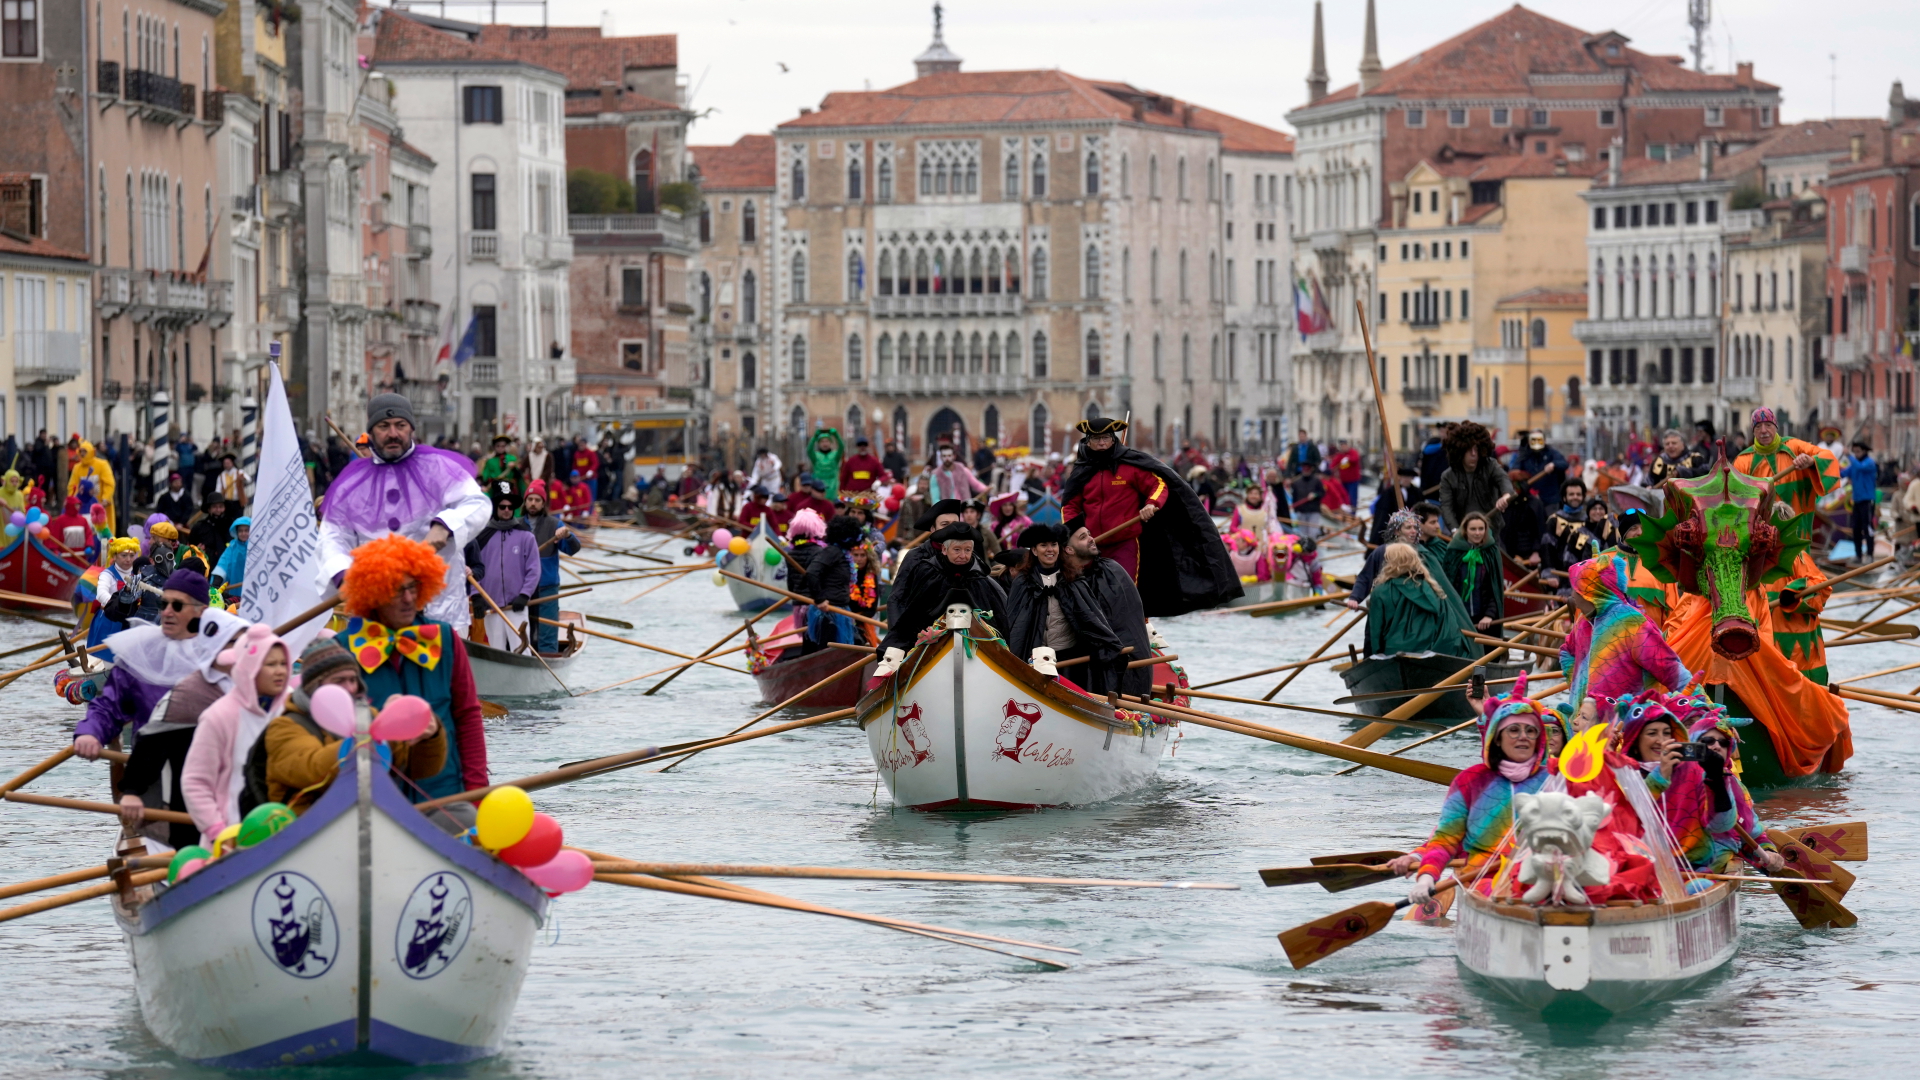 Gondeln mit verkleideten Besuchern während der Wasserparade in Venedig. | dpa